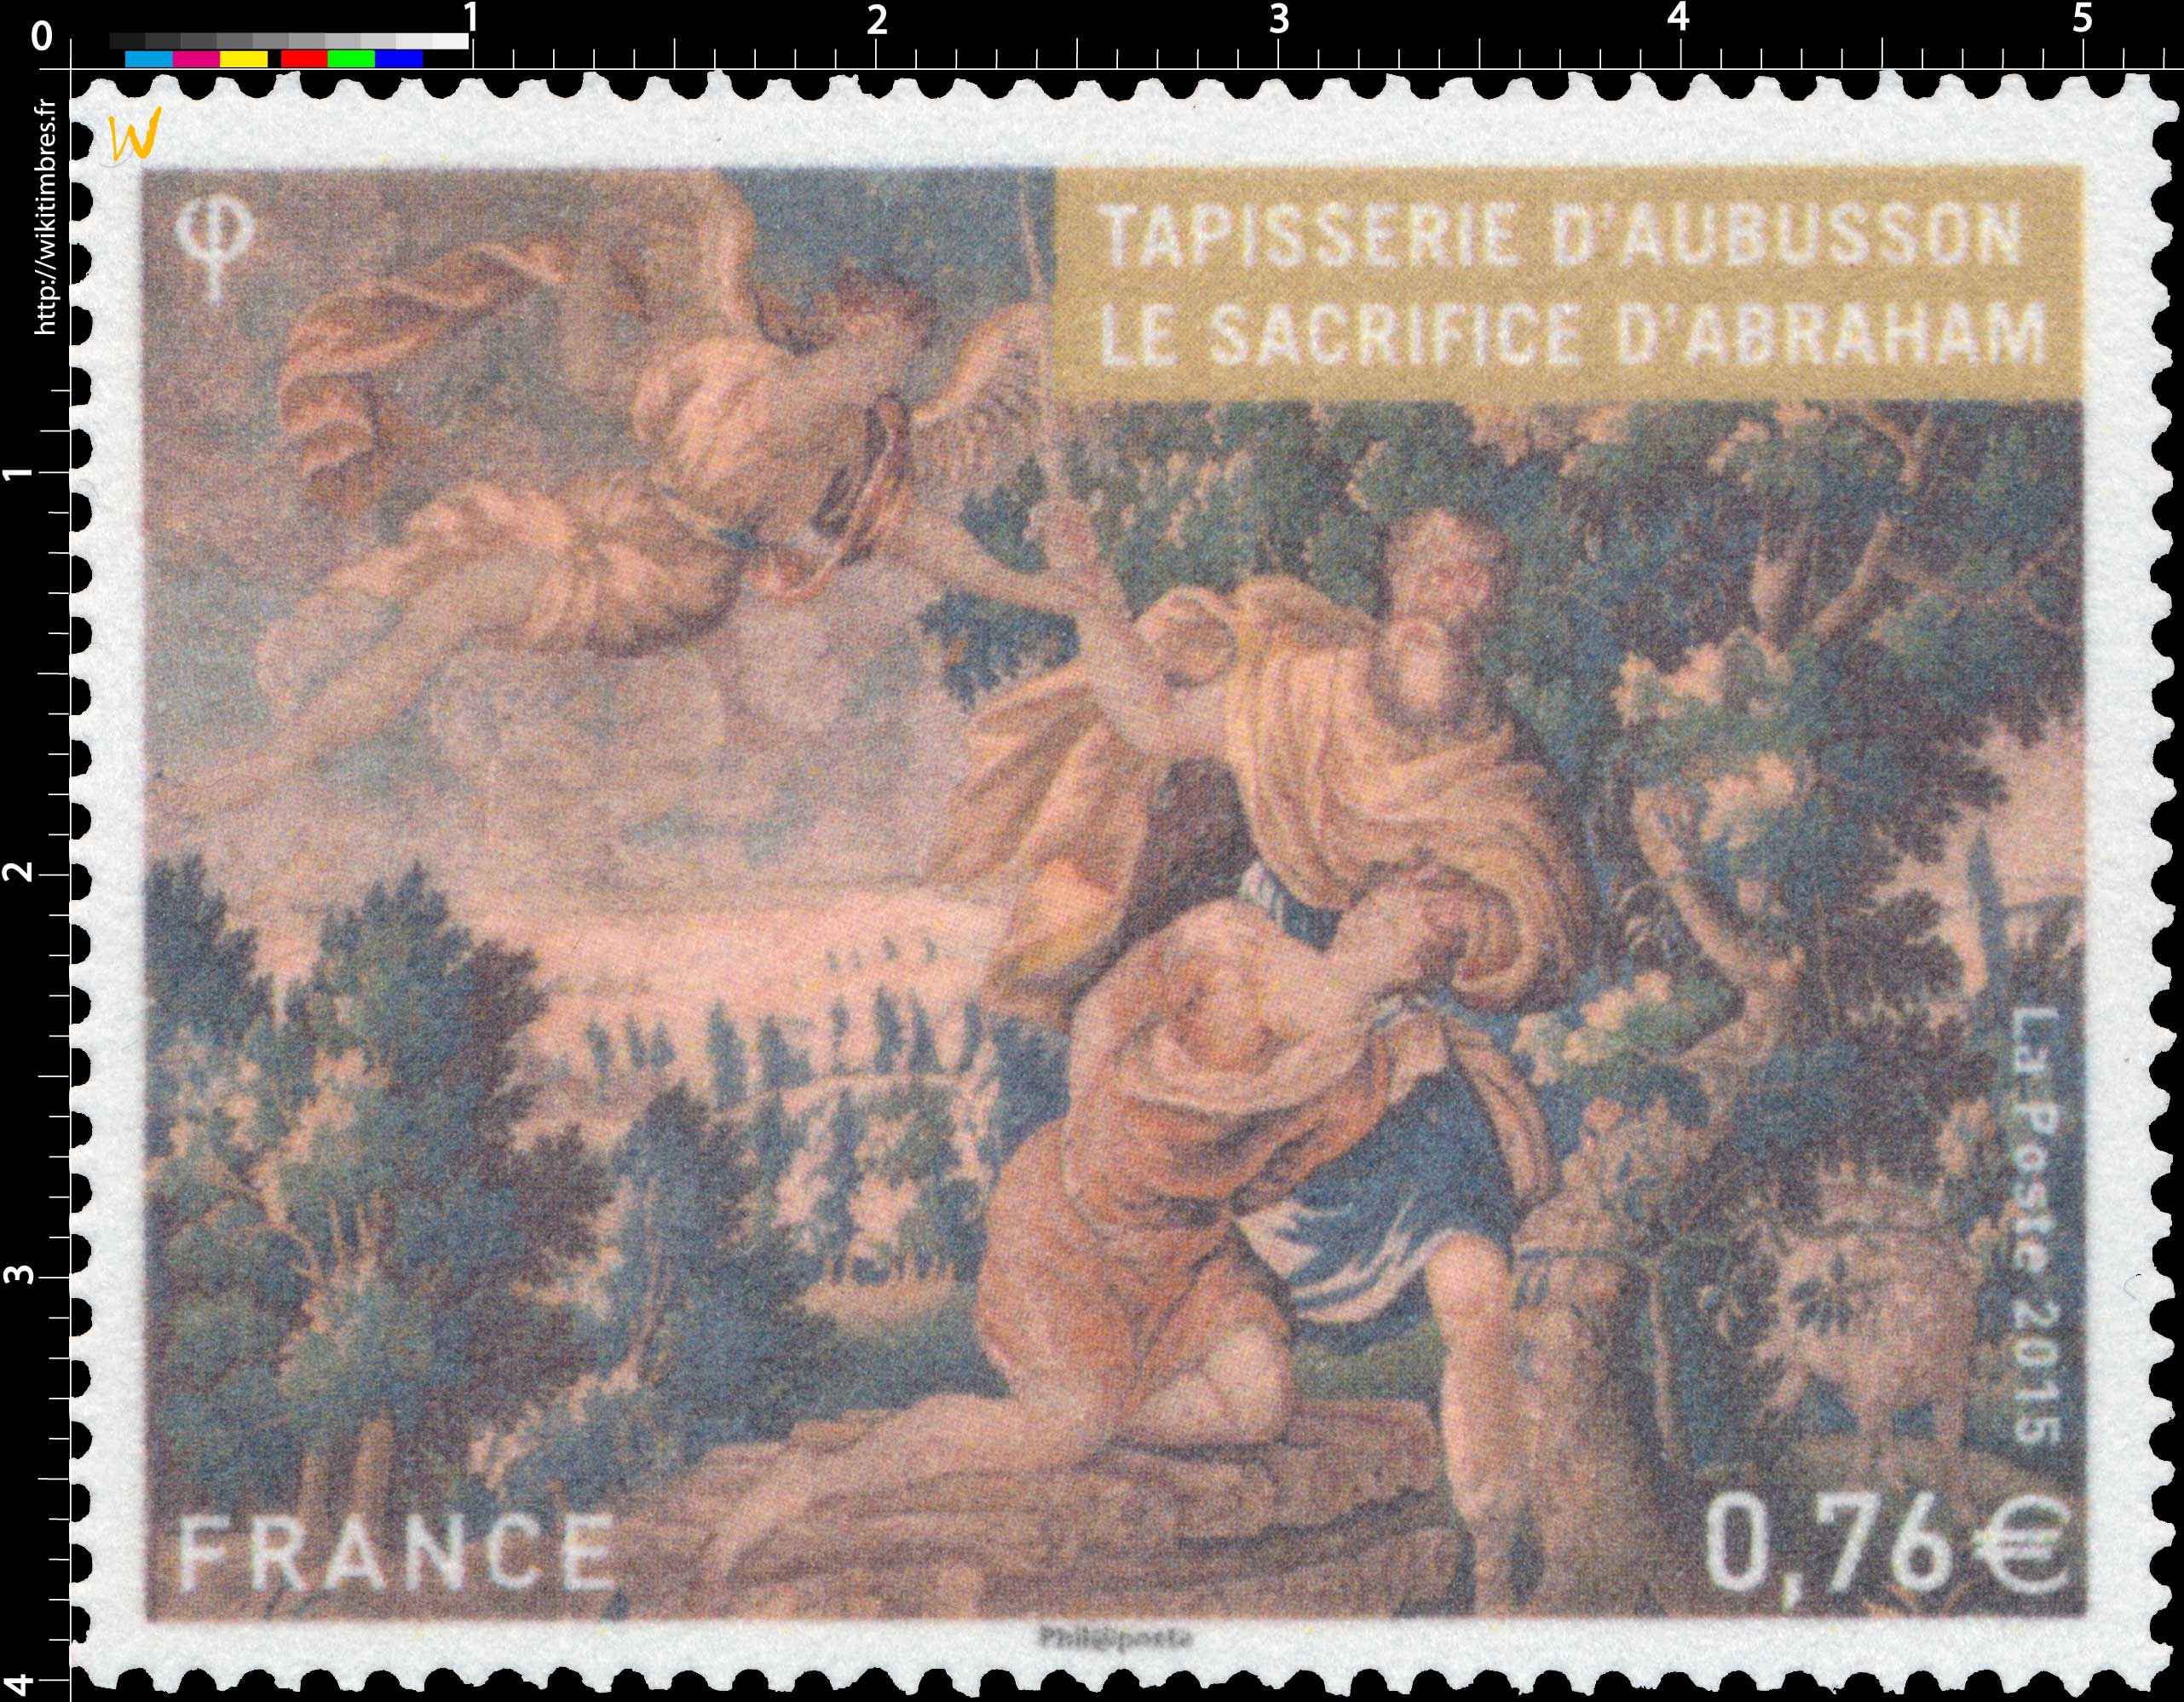 2015 Tapisserie d'Aubusson - Le sacrifice d'Abraham